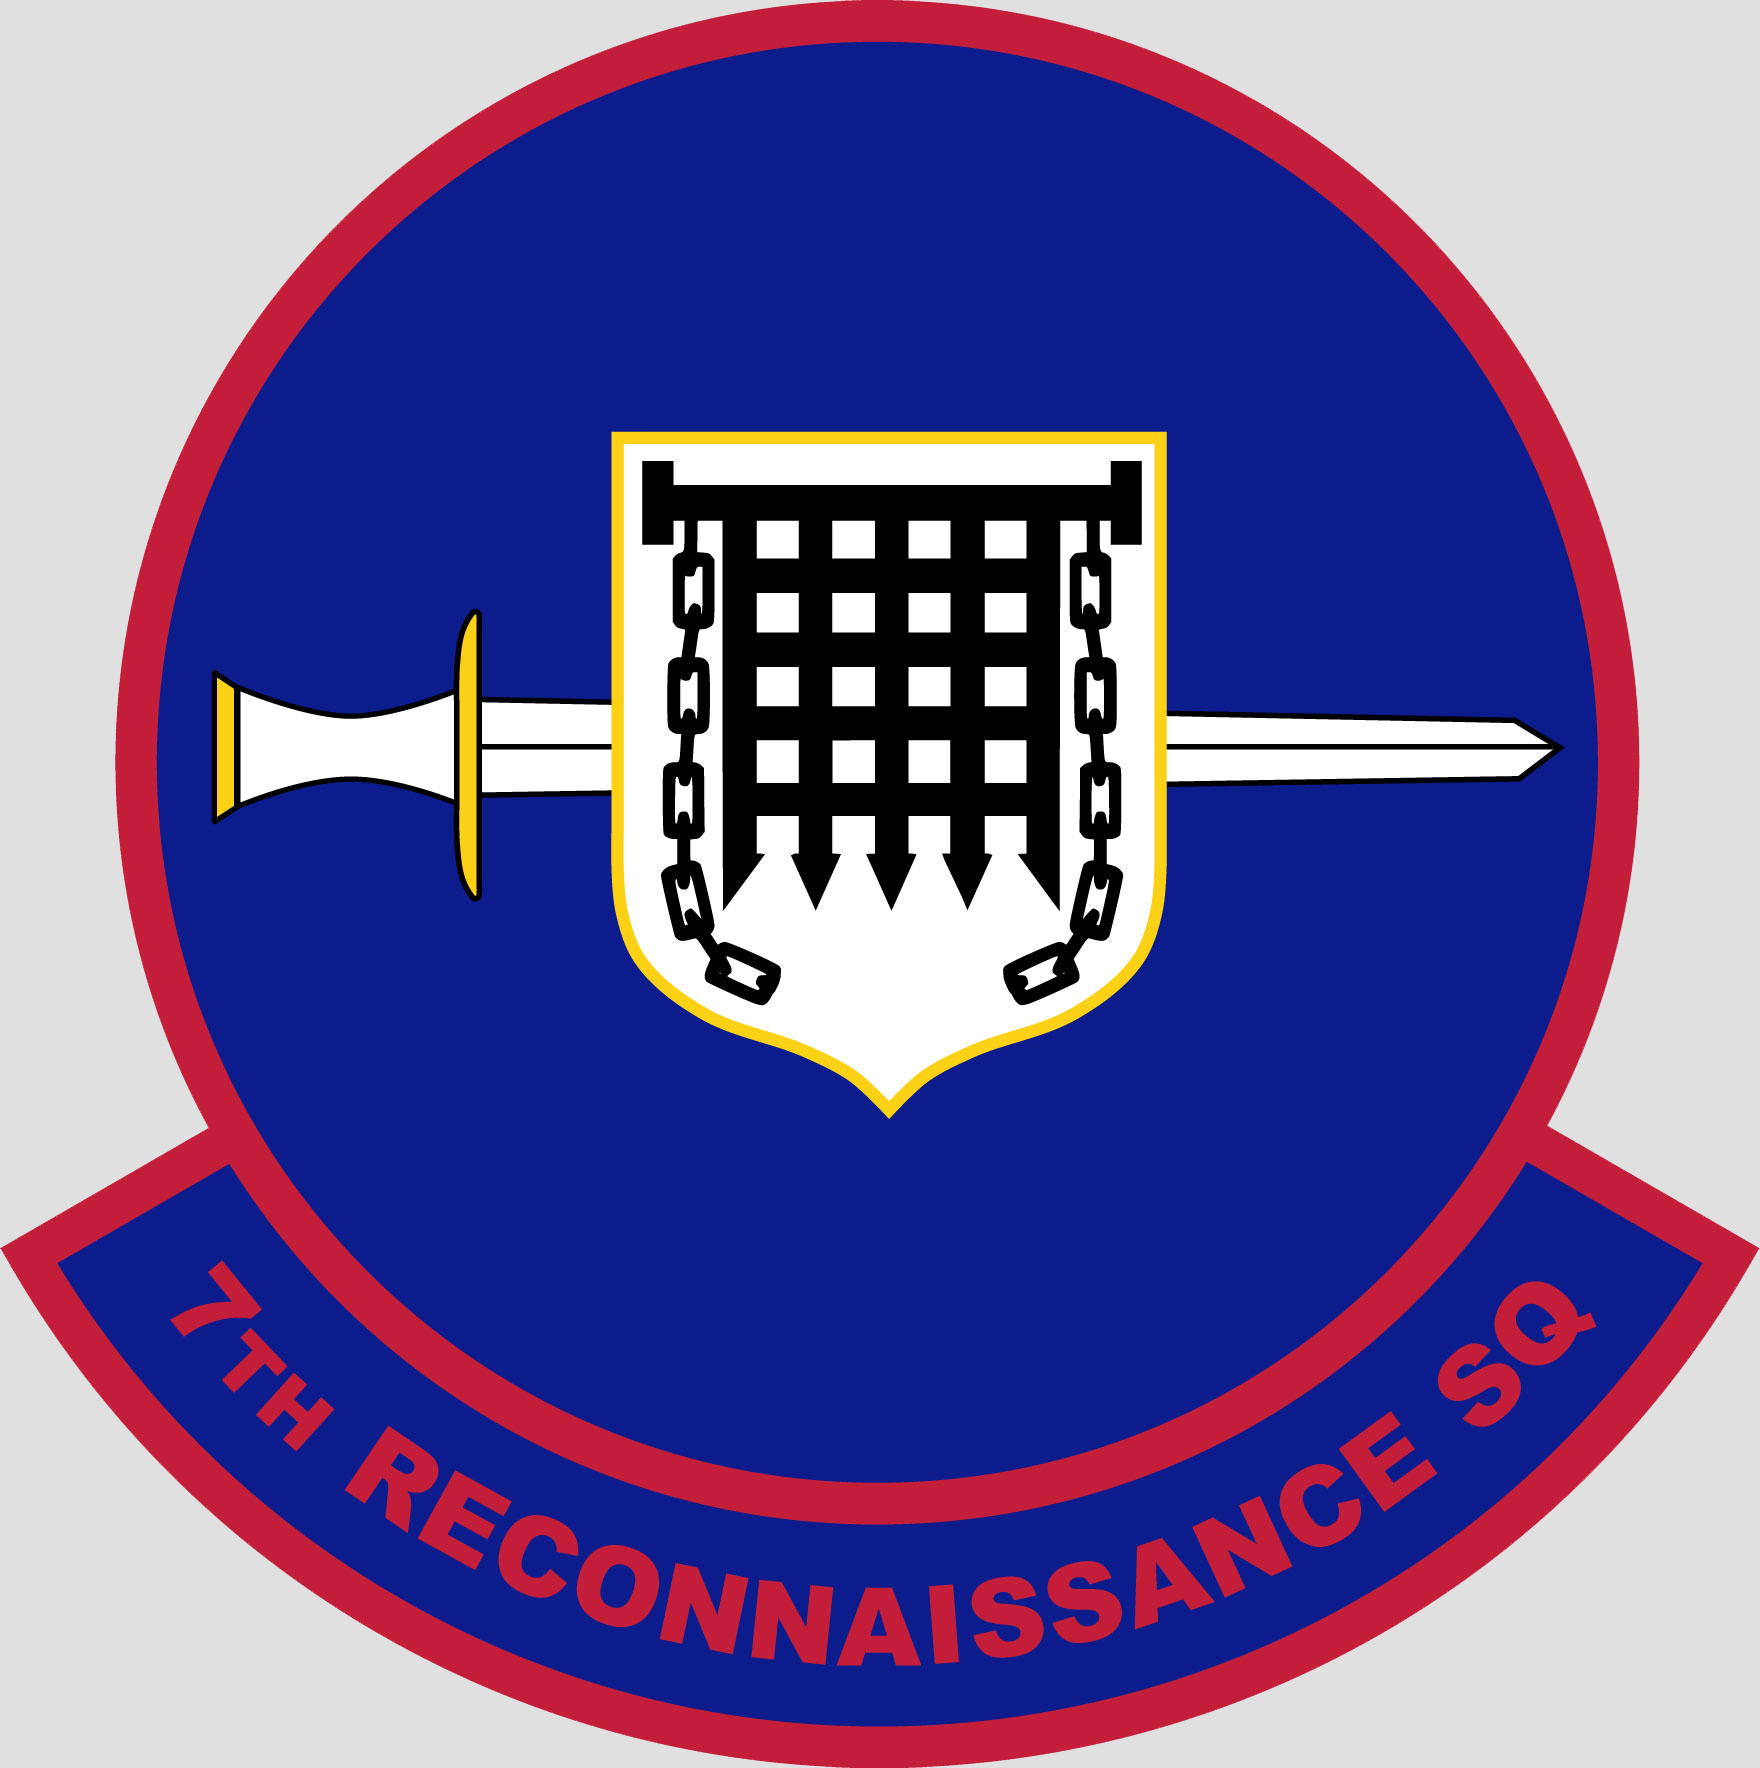 7th Reconnaissance Squadron